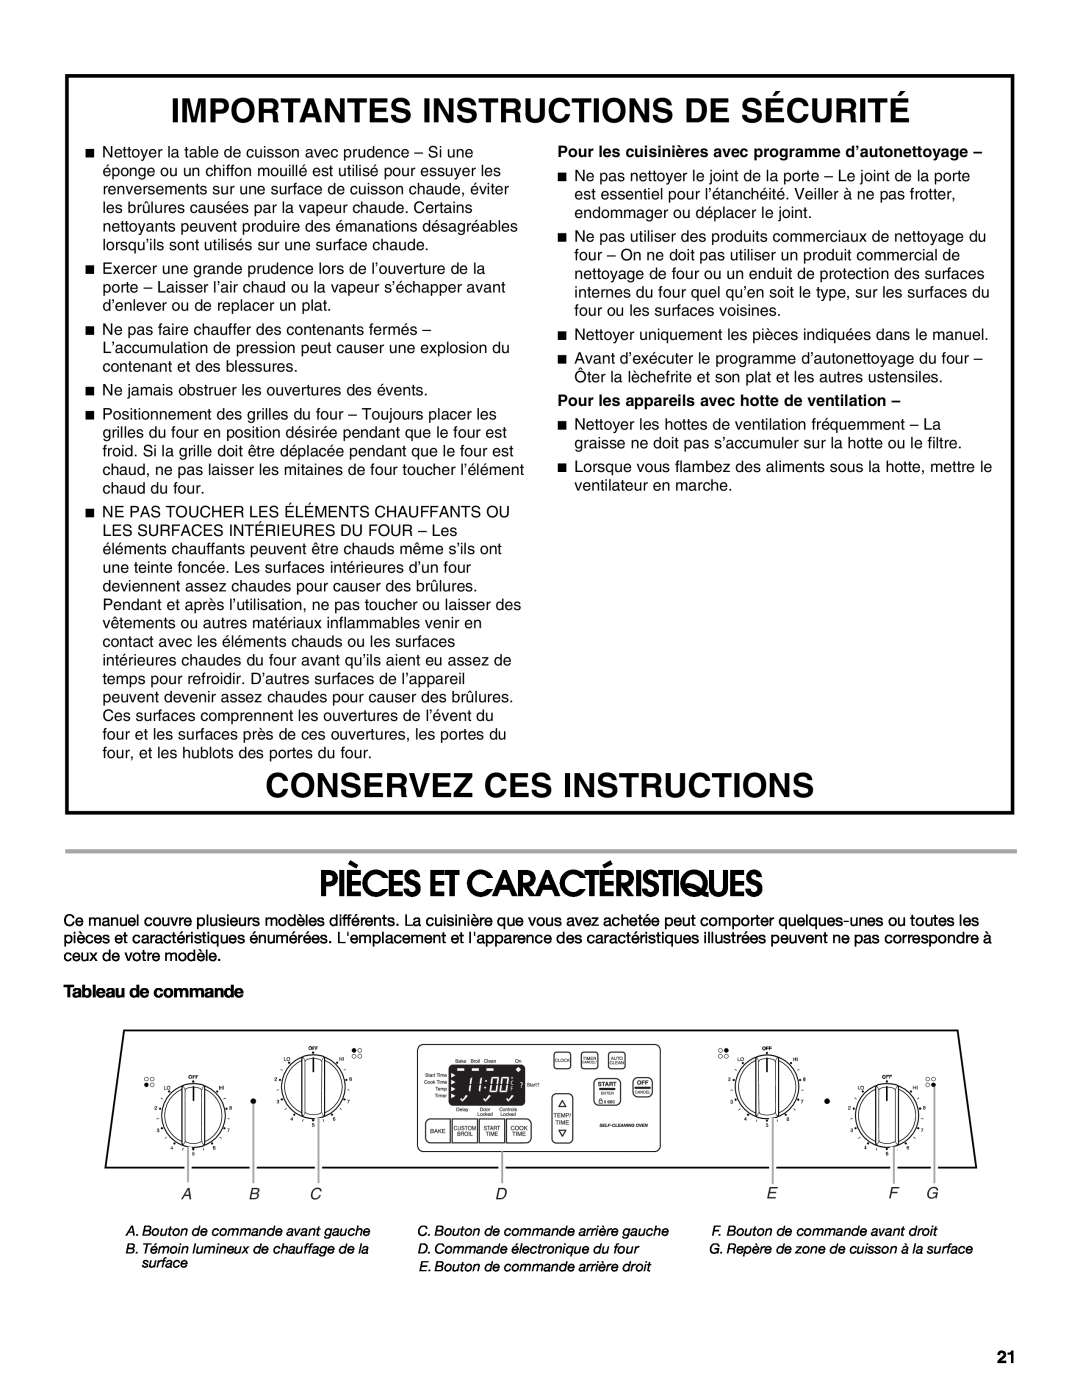 Whirlpool W10120516A manual Pièces Et Caractéristiques, Tableau de commande, Importantes Instructions De Sécurité 